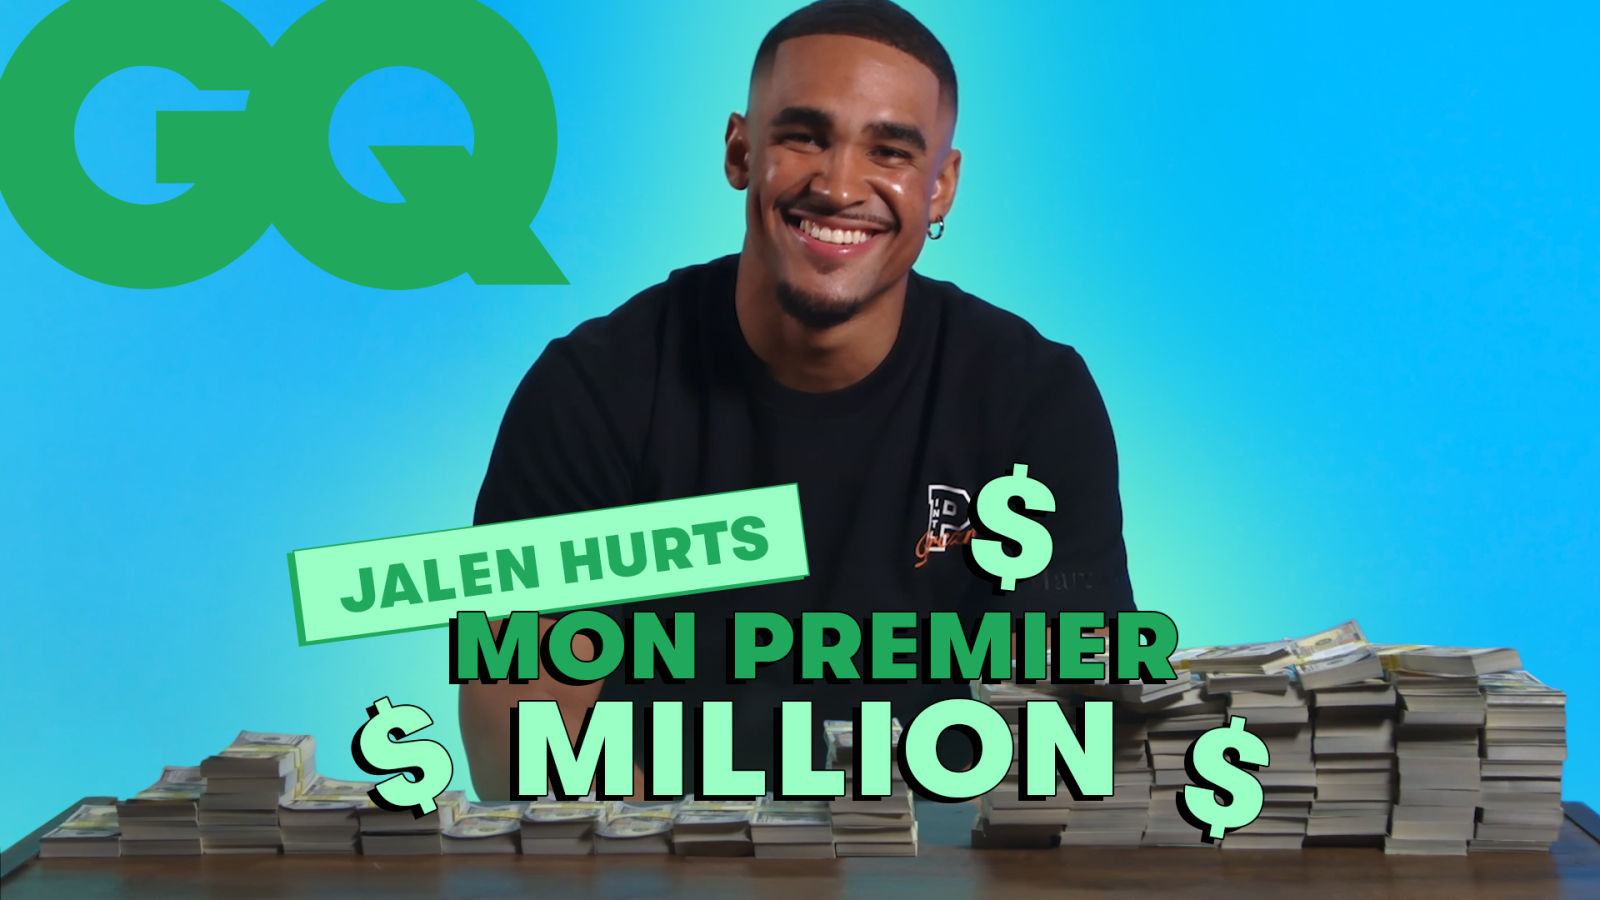 Le quarterback de la NFL Jalen Hurts dévoile comment il a investi son premier million